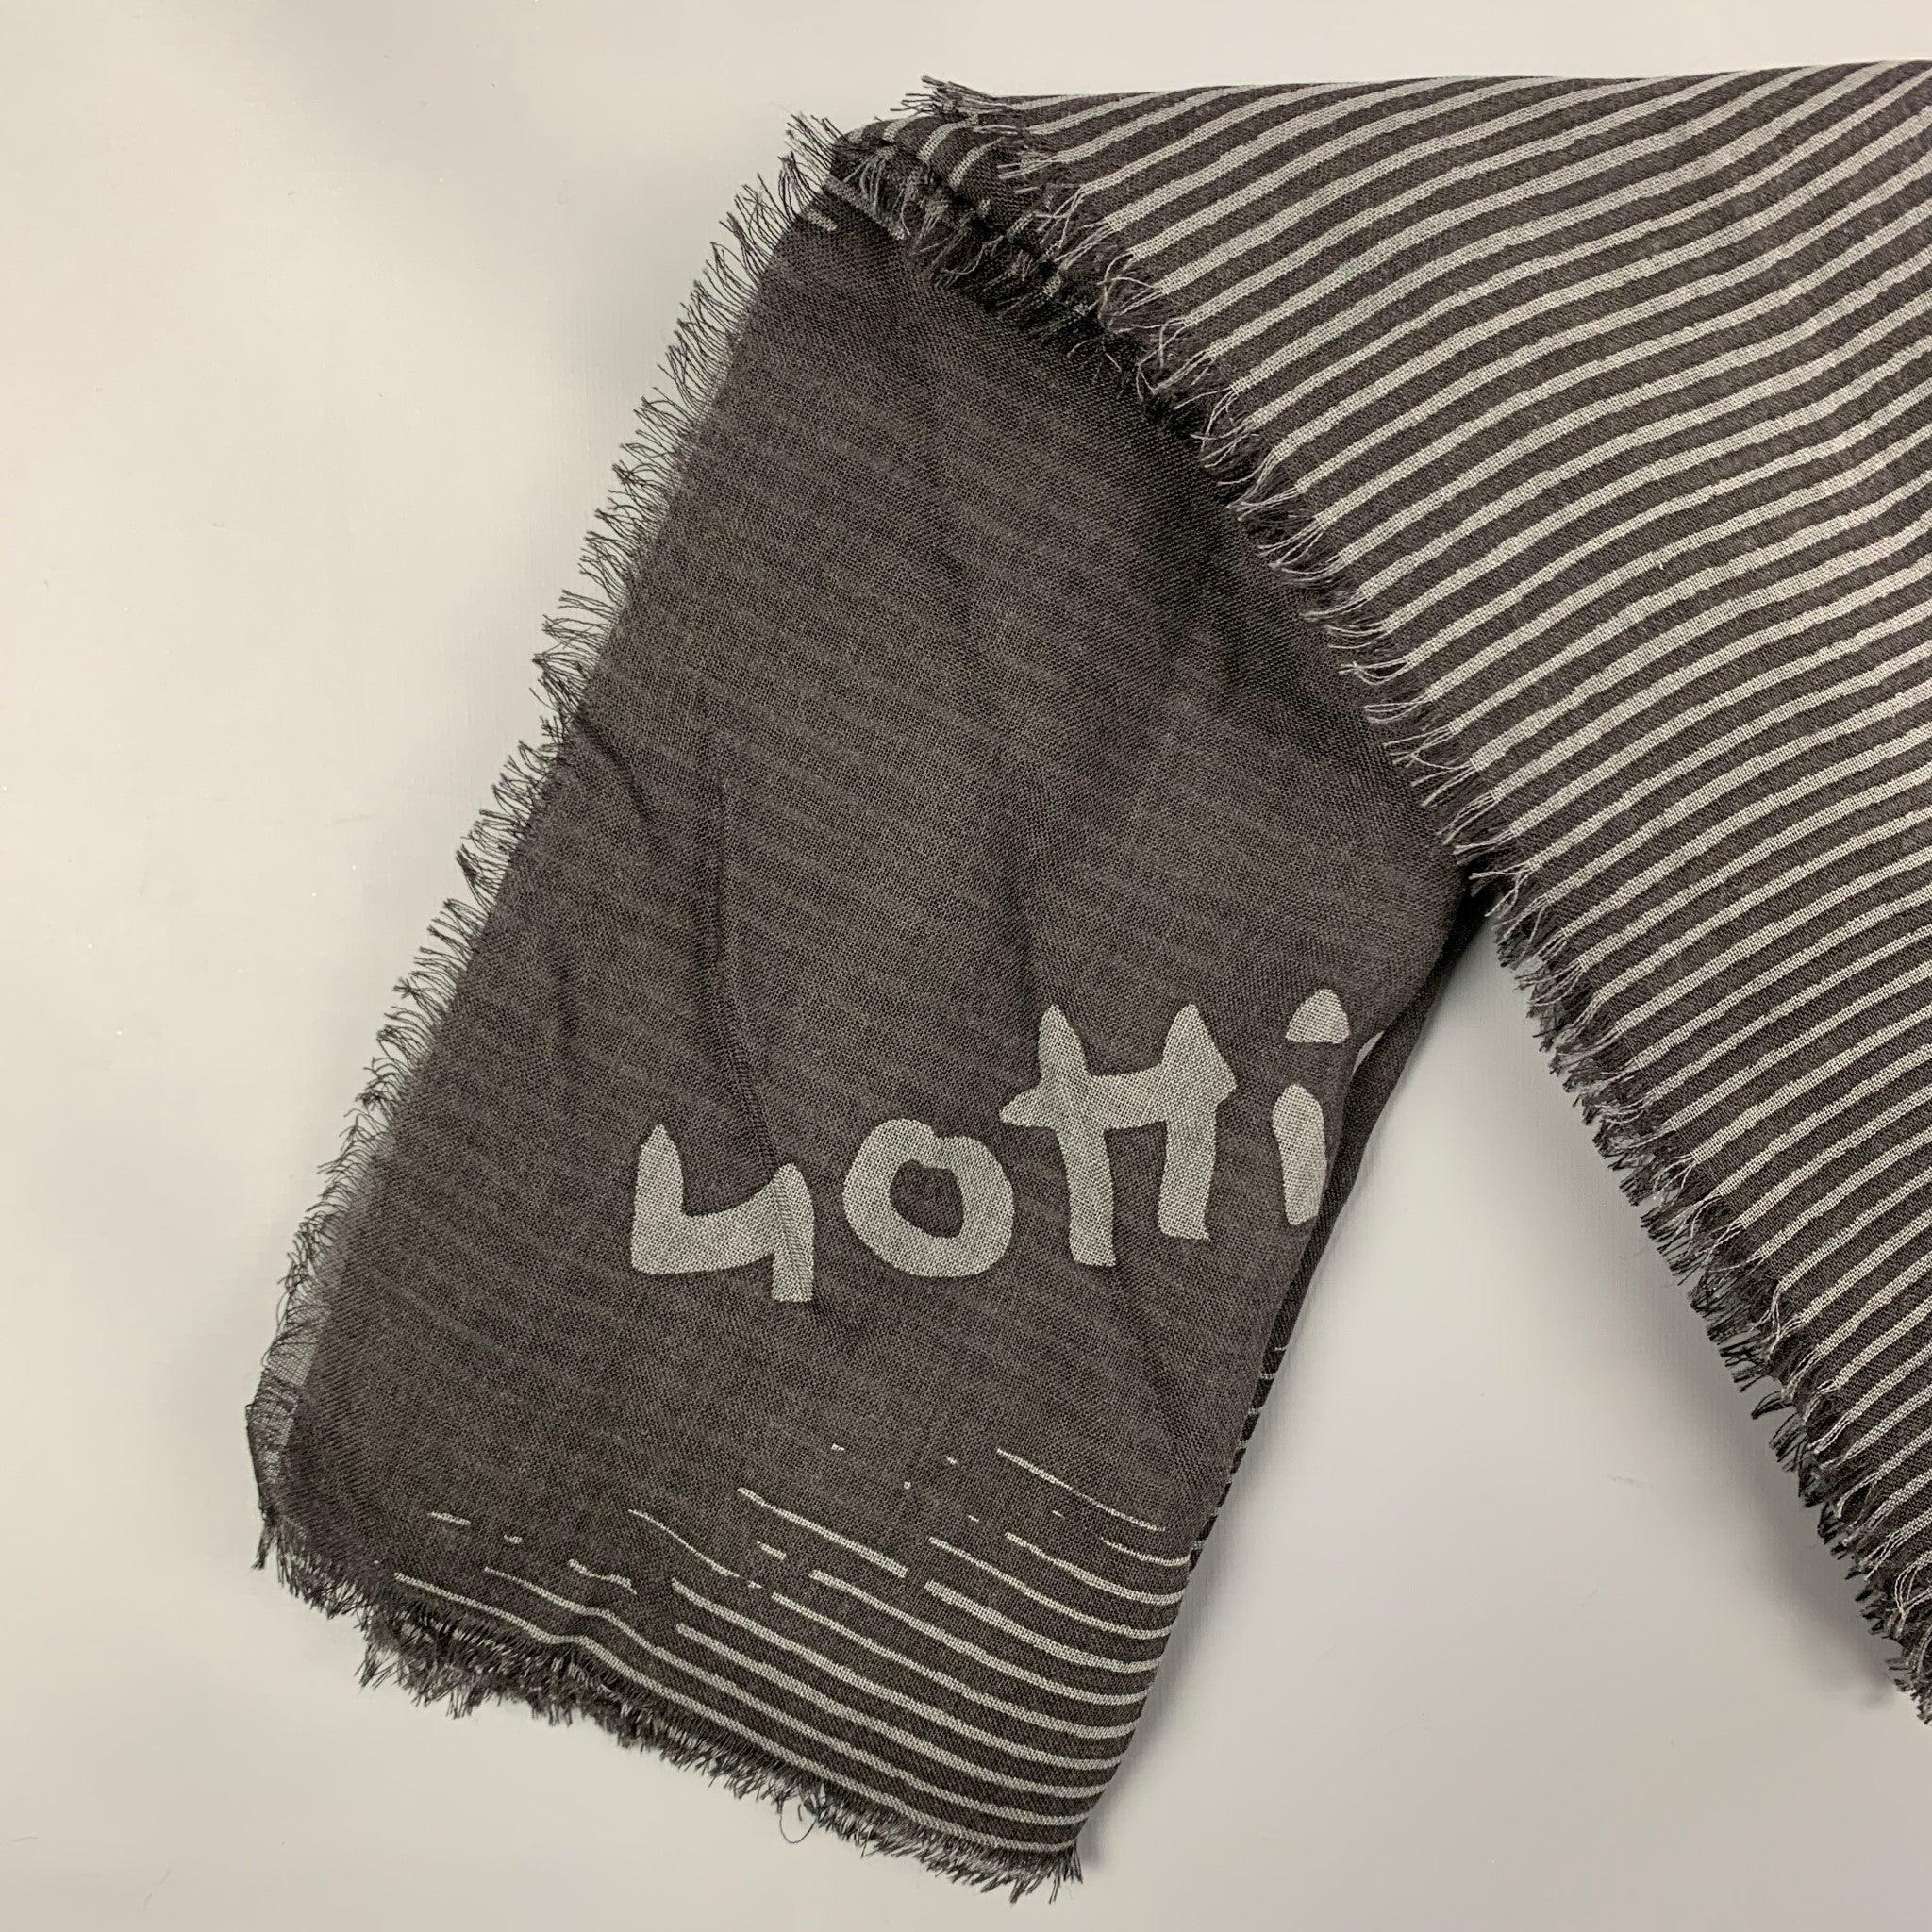 LOUIS VUITTON Schal aus schwarz-grau gestreifter Wolle/Seide mit Fransenbesatz. Hergestellt in Italien. Sehr gut
Gebrauchtes Zustand. 

Abmessungen: 
  54 Zoll  x 54 Zoll 
  
  
 
Sui Generis-Referenz: 120136
Kategorie: Schals
Mehr Details
   